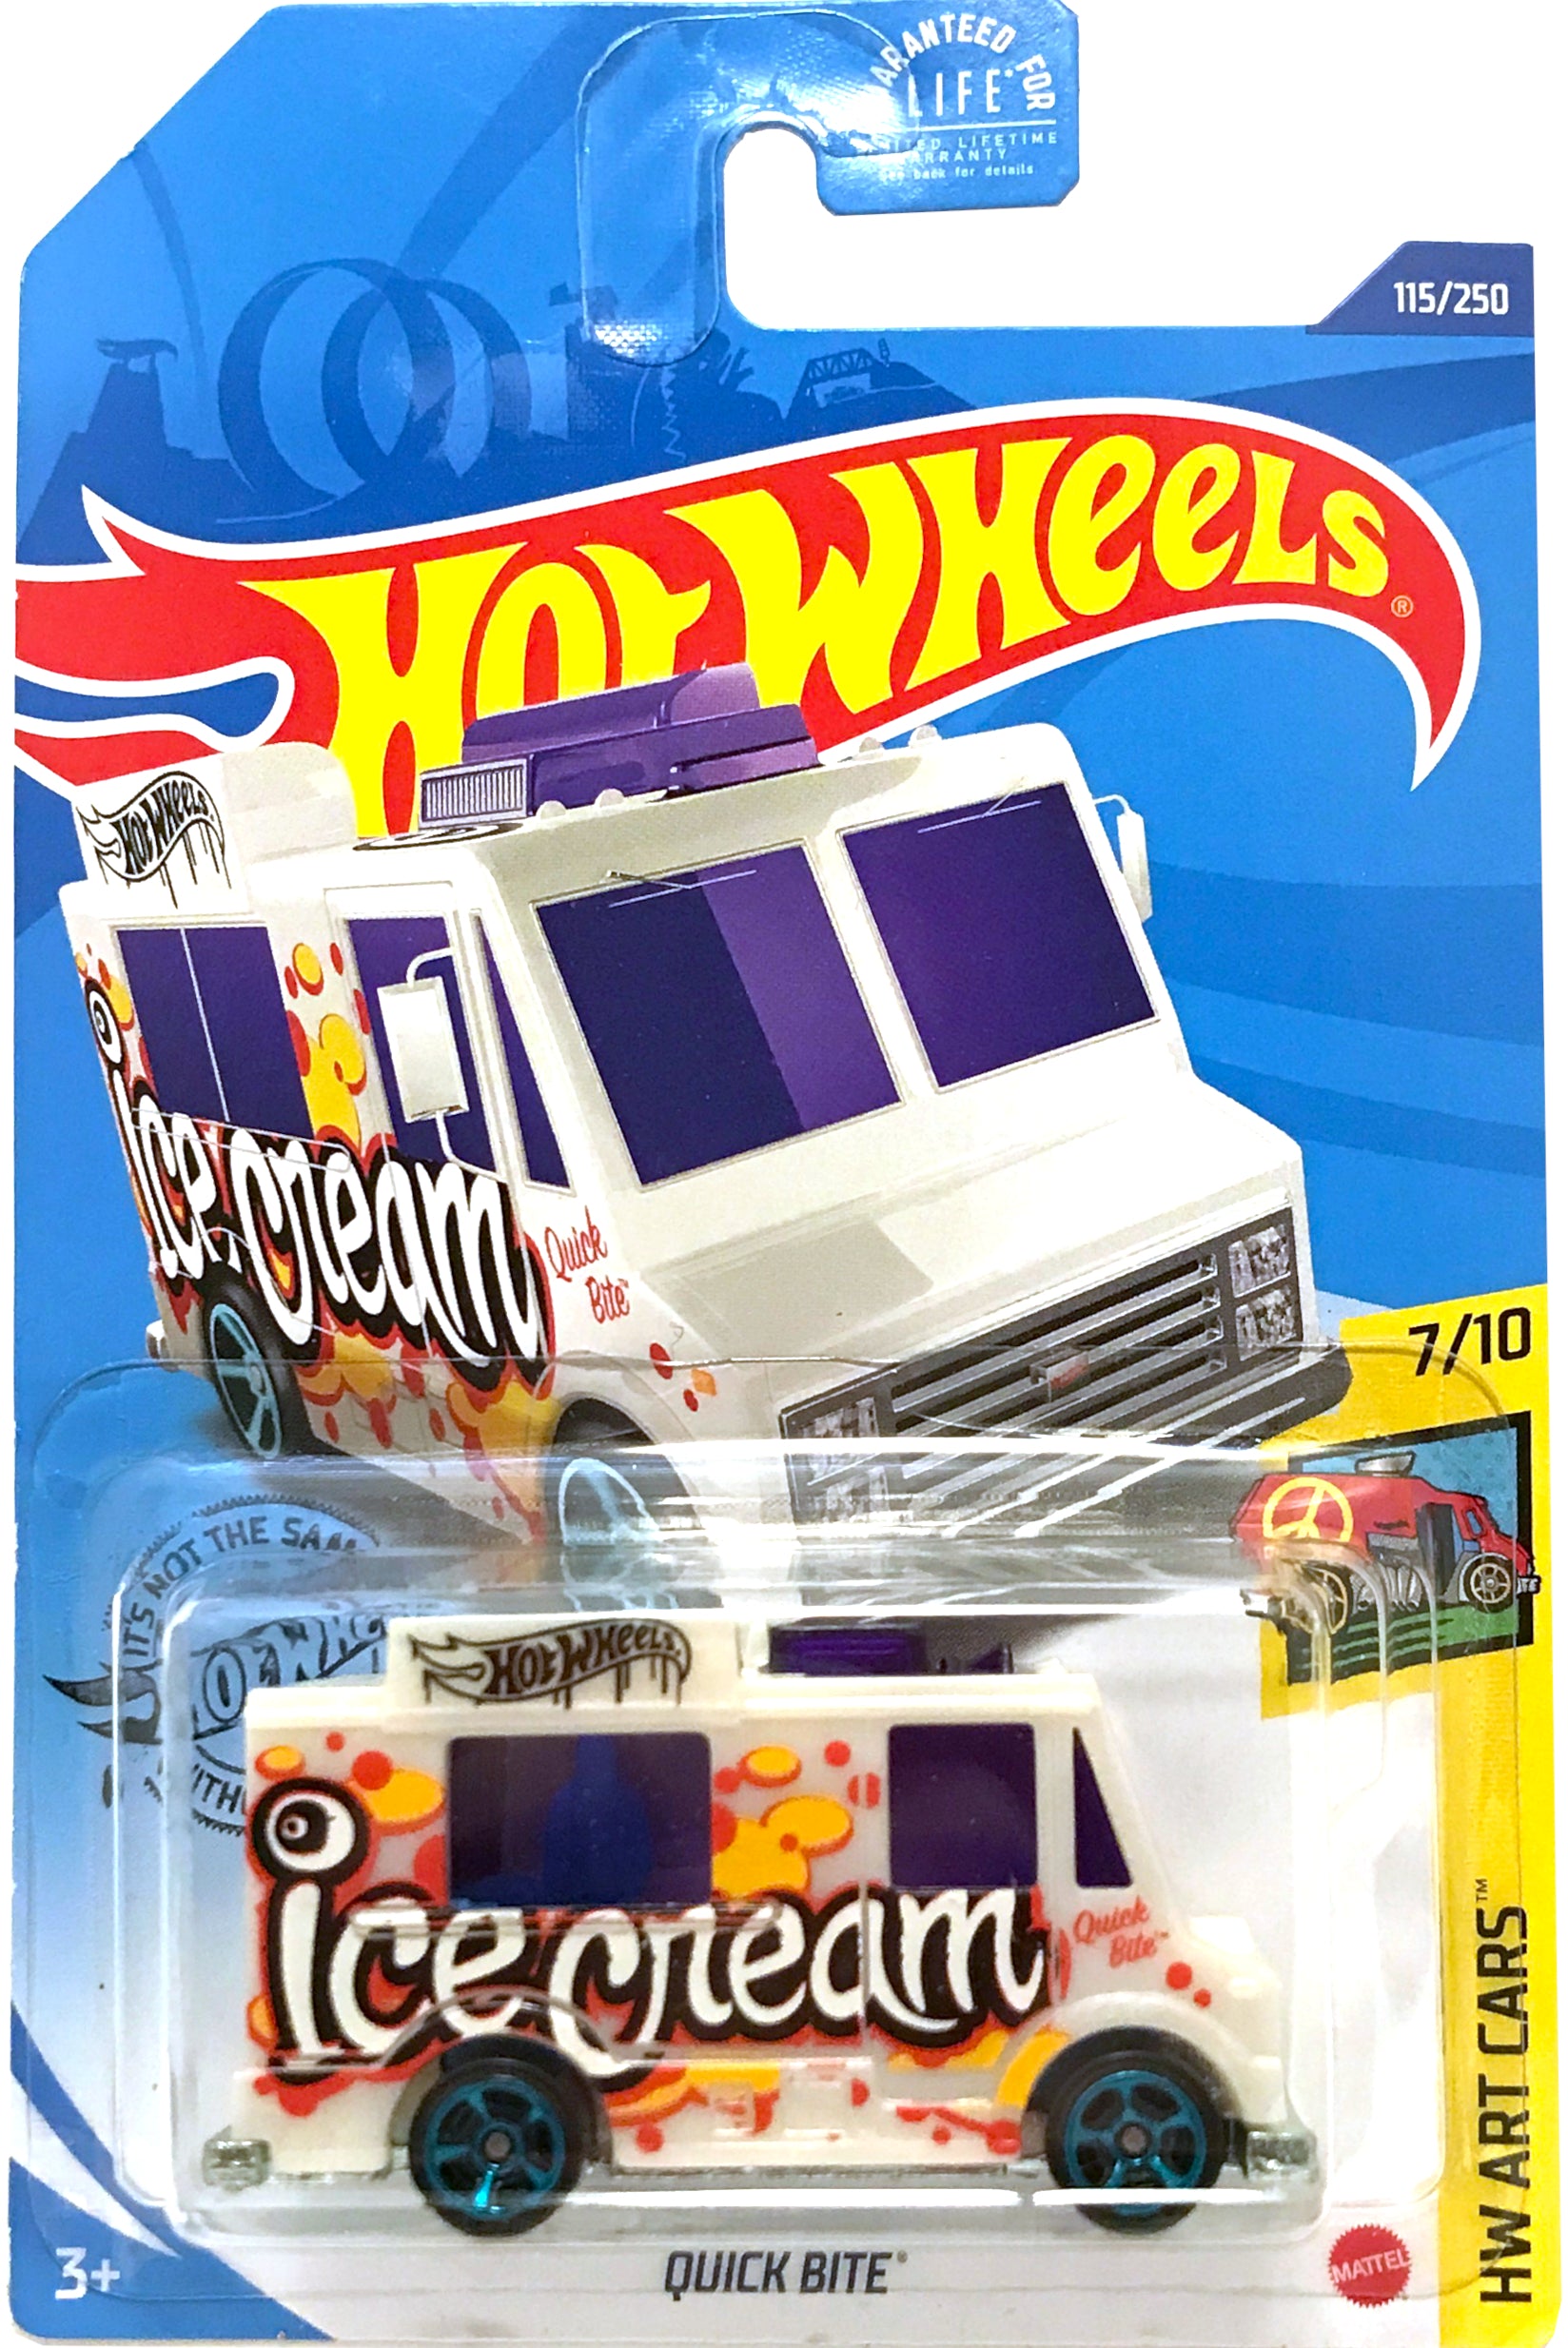 2020 Hot Wheels Mainline #115 - Quick Bite Ice Cream Truck (White) GHF96